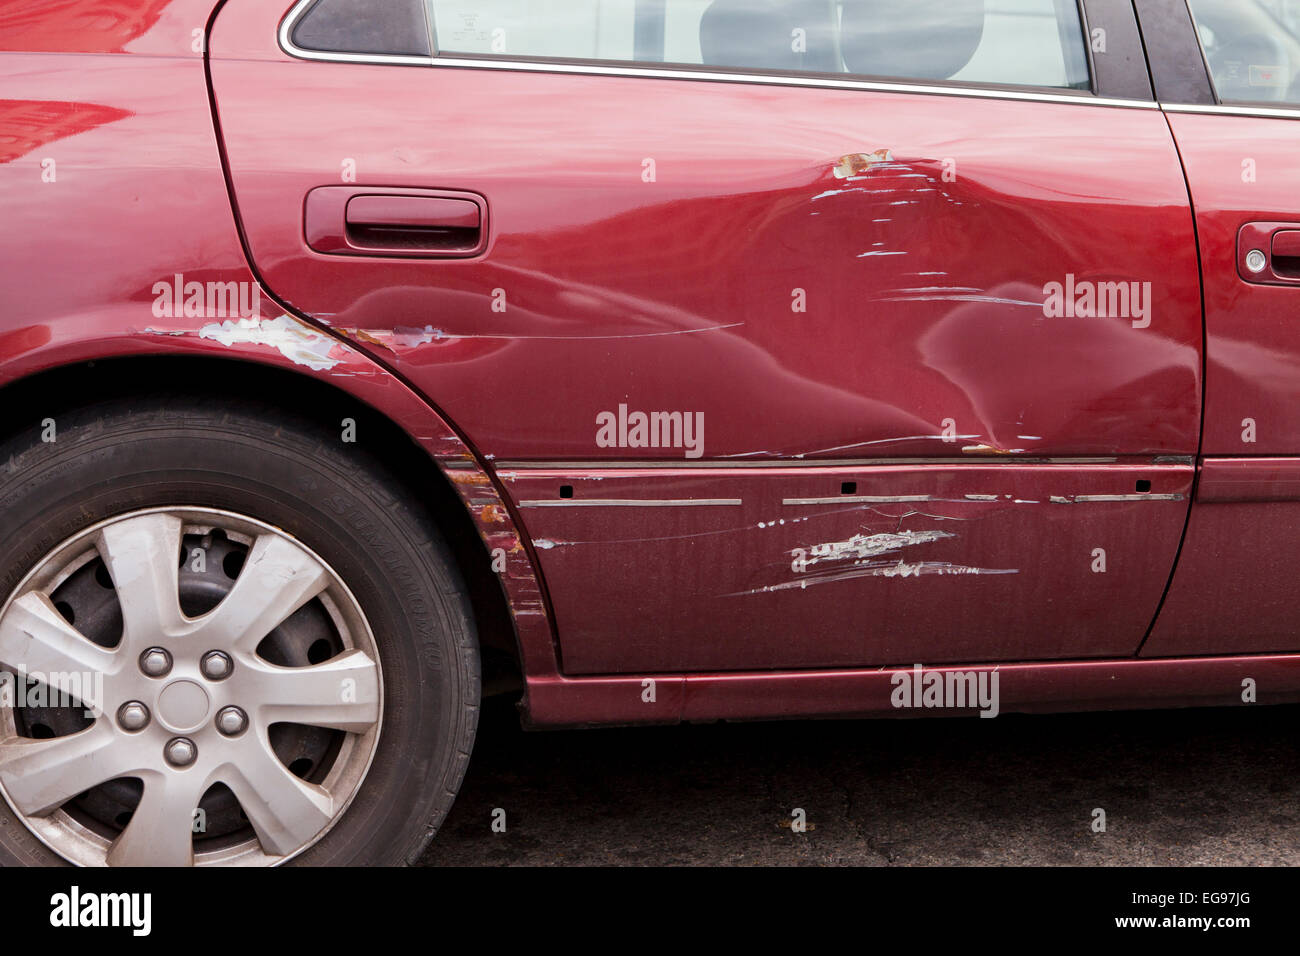 Lustige Aufkleber auf dem Auto Tür und einen Kratzer in den Wirkung  Stockfotografie - Alamy